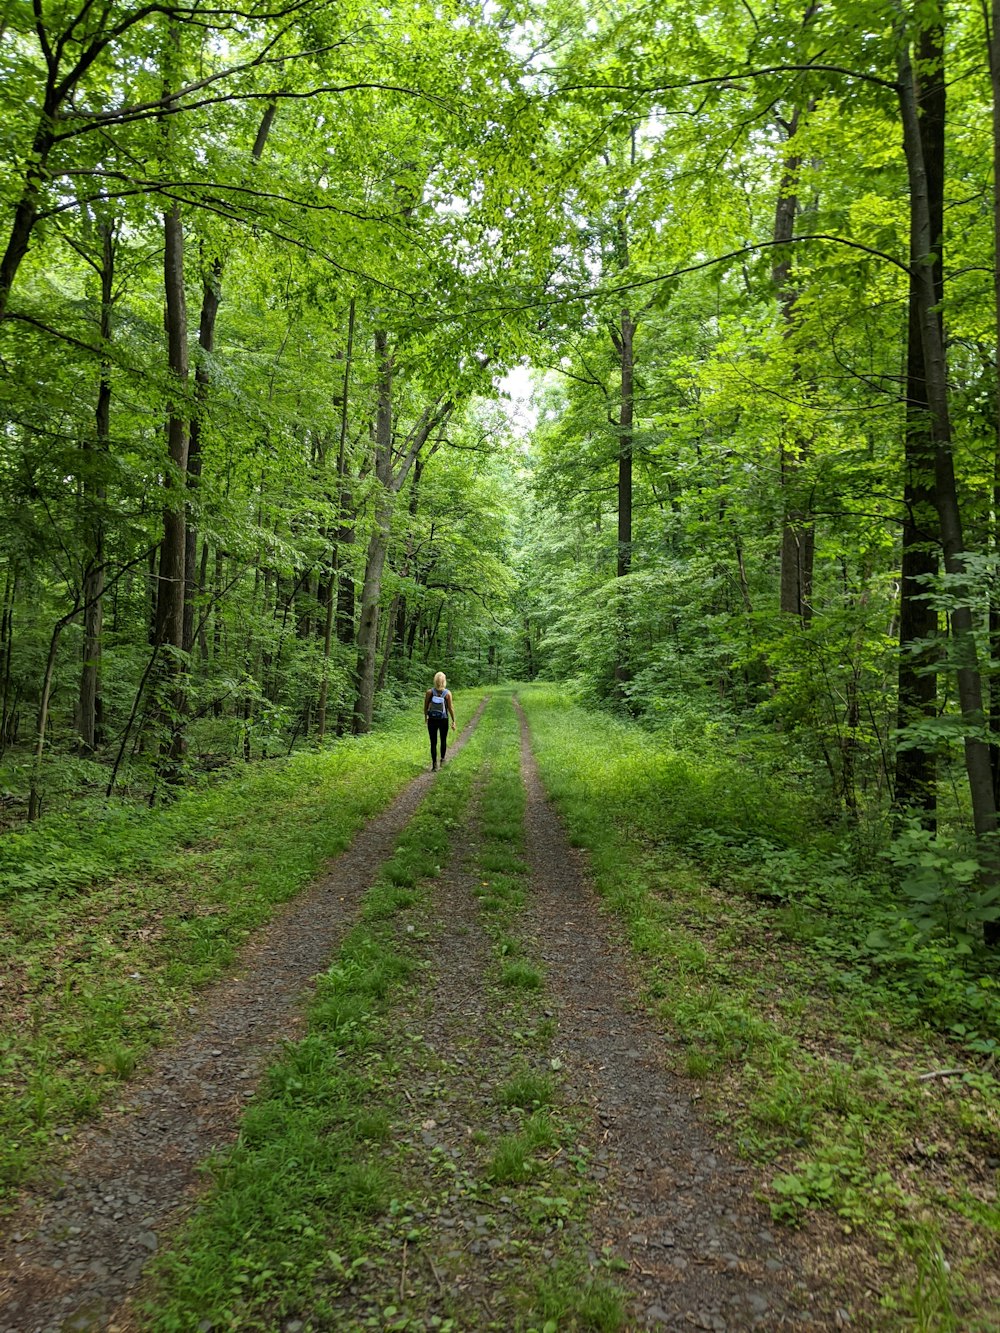 Persona con chaqueta negra caminando por el camino entre árboles verdes durante el día